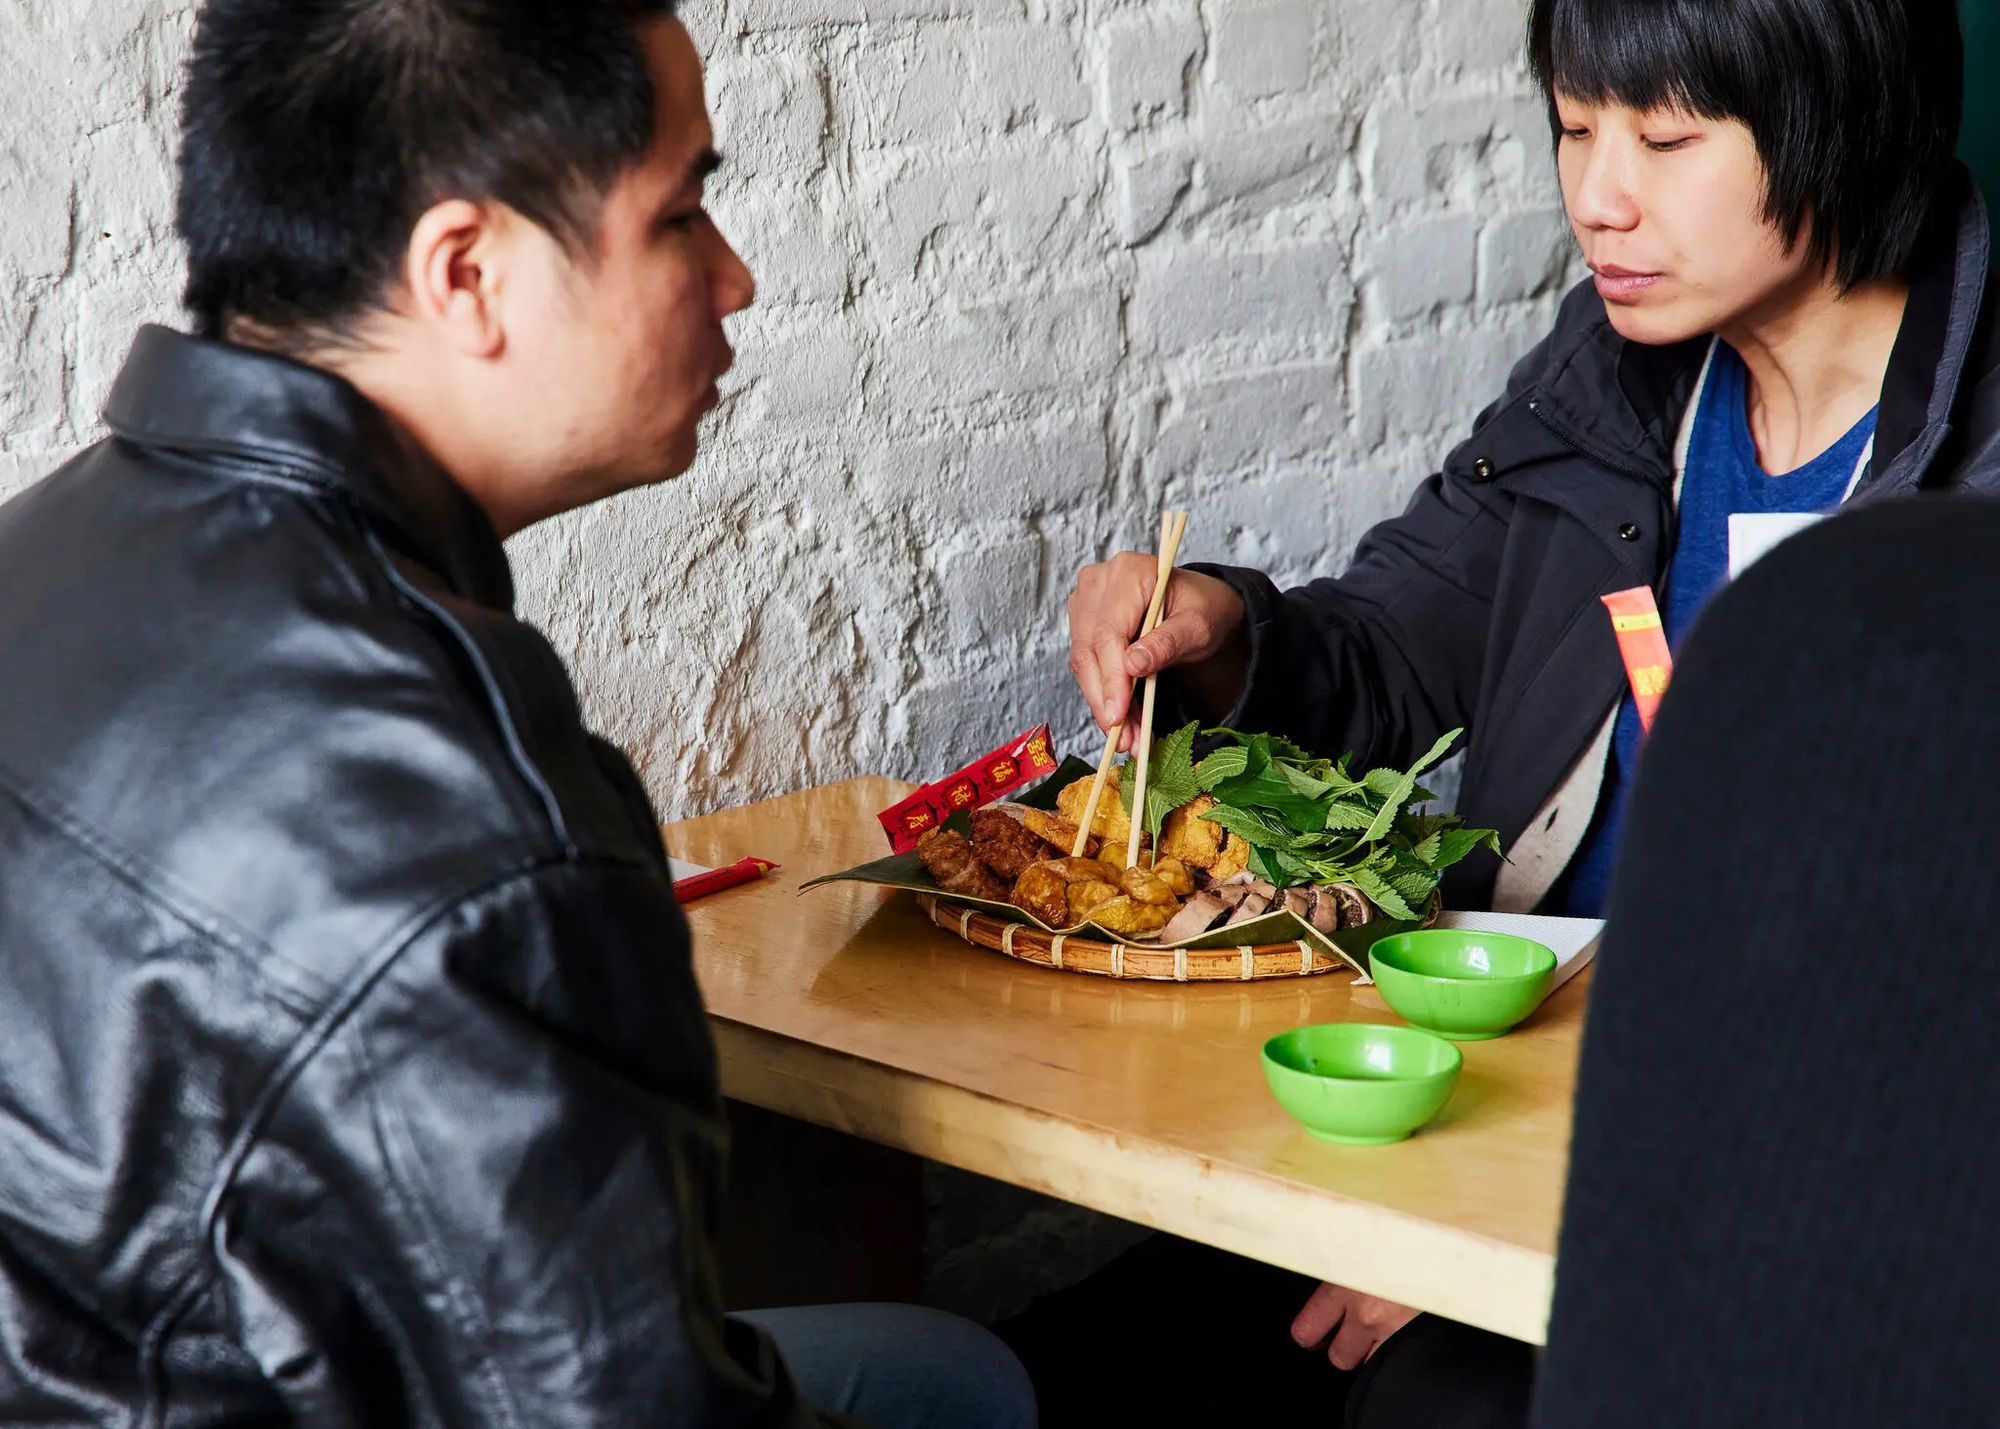 Báo Mỹ nức nở khen bún đậu mắm tôm là món Việt hấp dẫn nhất New York  - Ảnh 4.